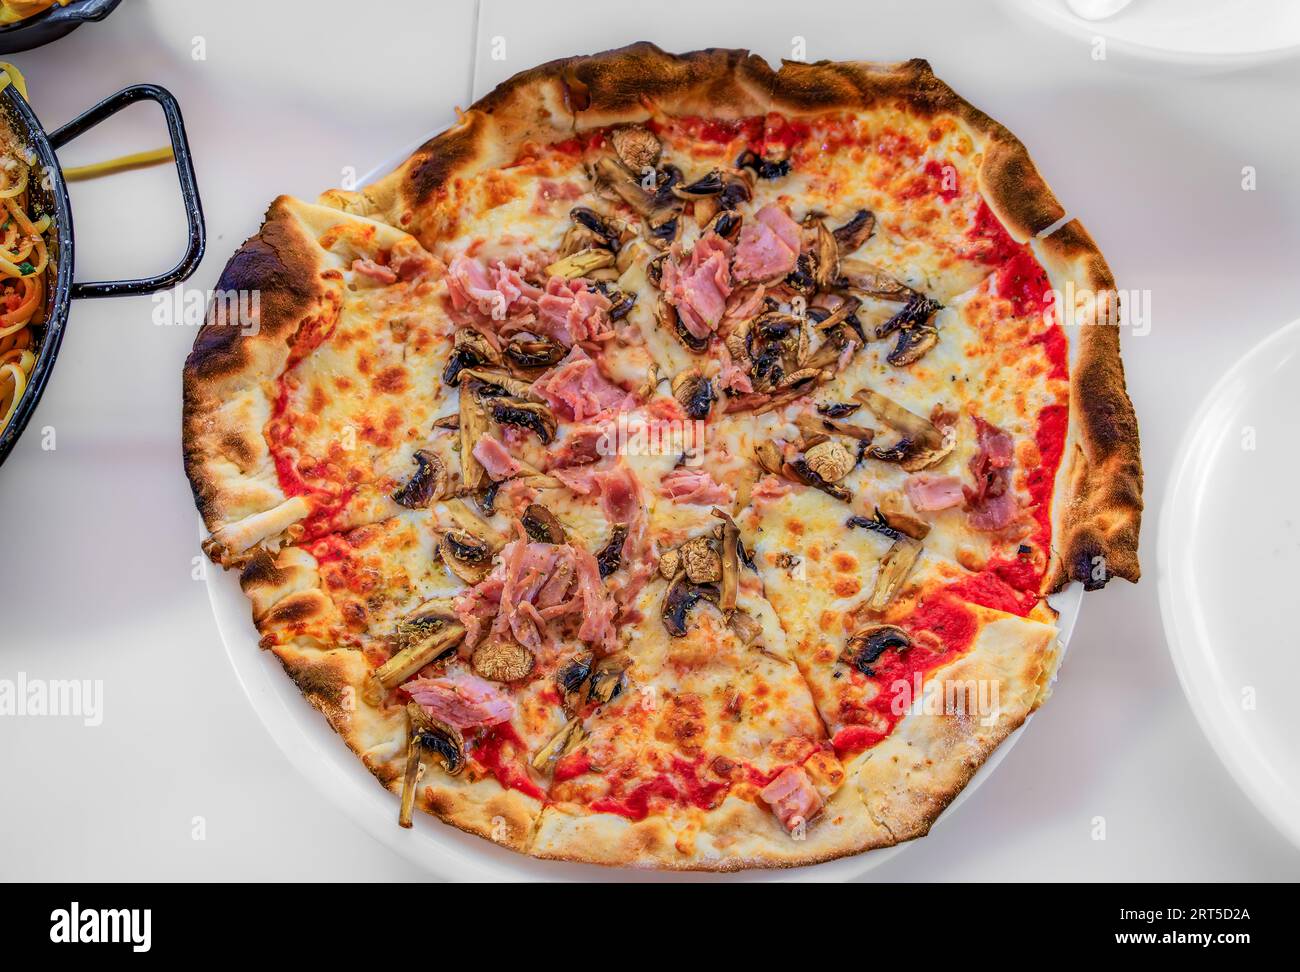 Pizza napolitaine avec sauce tomate, fromage, jambon et champignons dans un restaurant italien de la vieille ville, Vieille ville de Nice, Sud de la France Banque D'Images